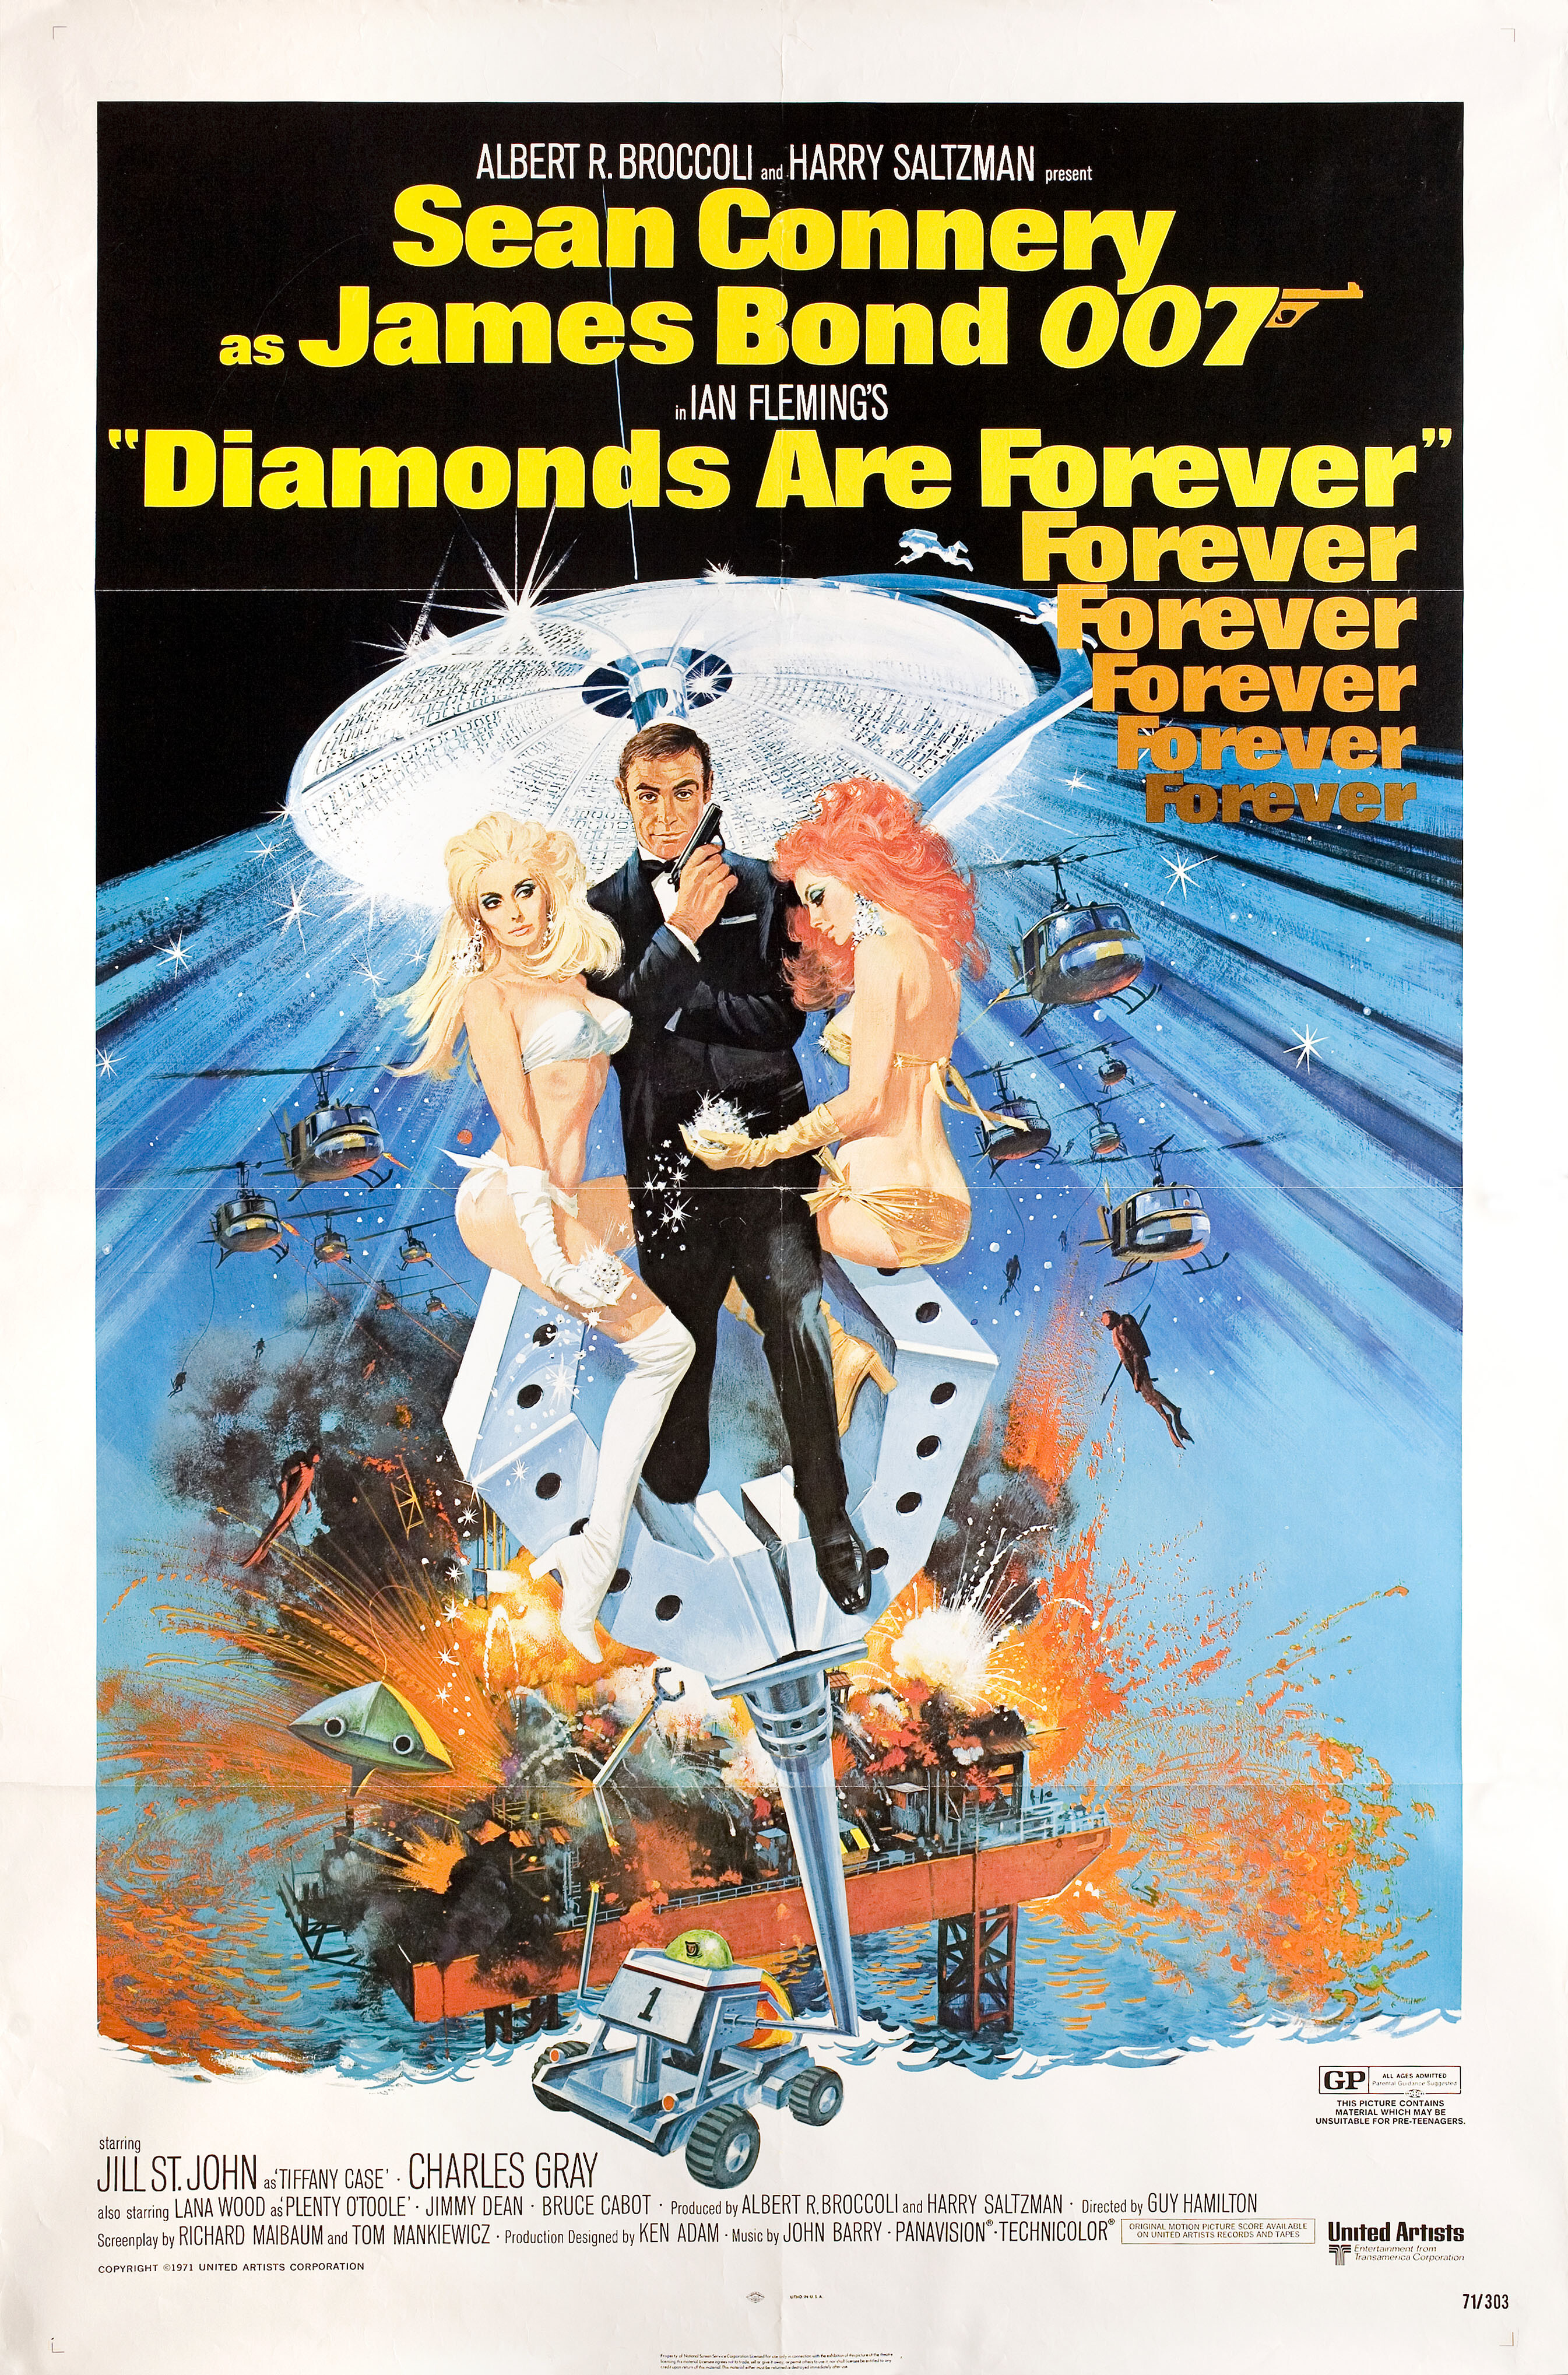 Бриллианты навсегда (Diamonds Are Forever, 1971), режиссёр Гай Хэмилтон, художественный постер к фильму (США, 1971 год), автор Роберт МакГиннис